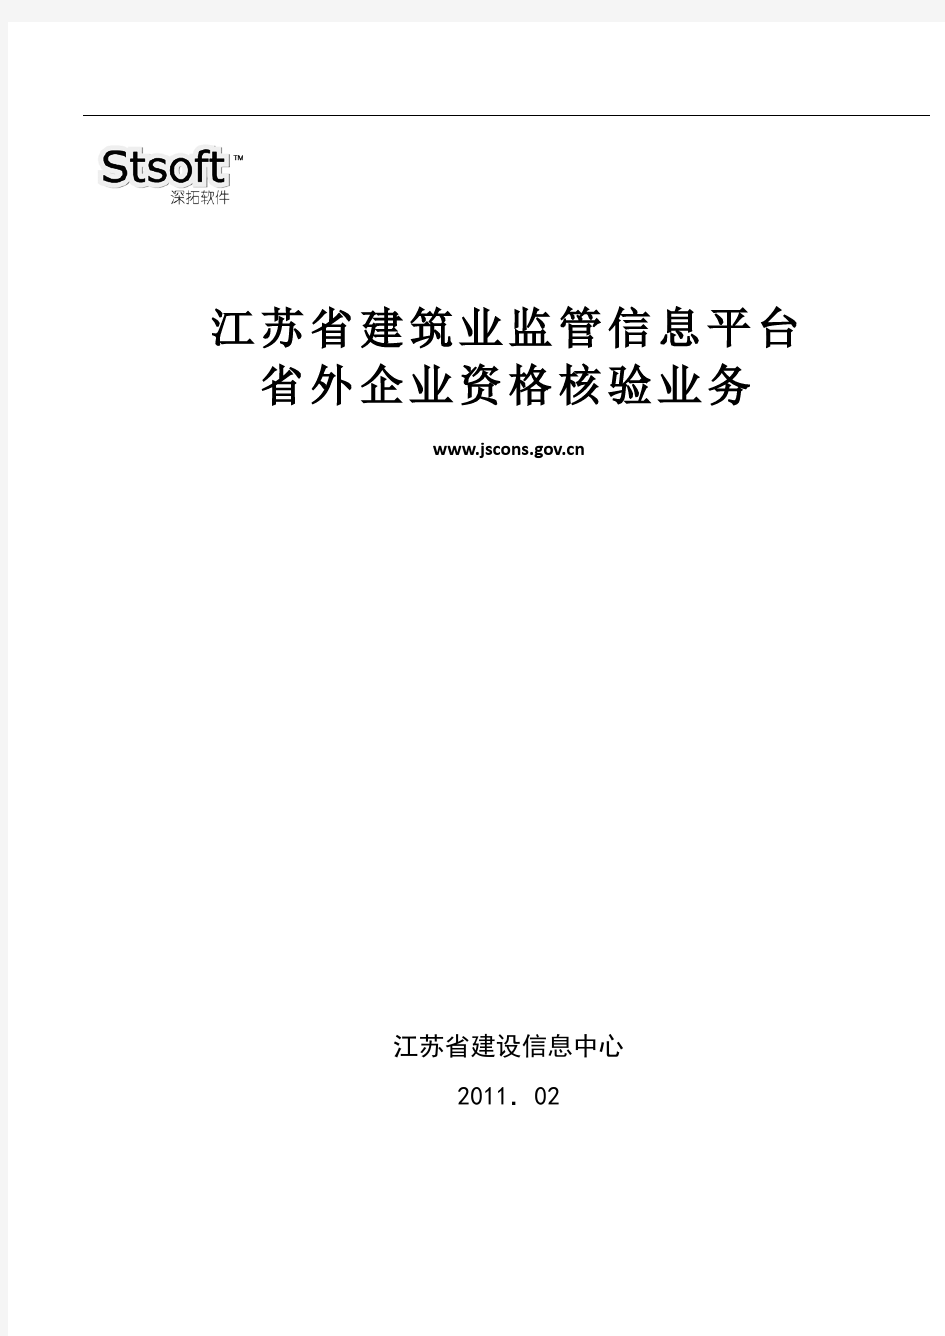 江苏省建筑业监管信息平台——省外企业资格核验分册